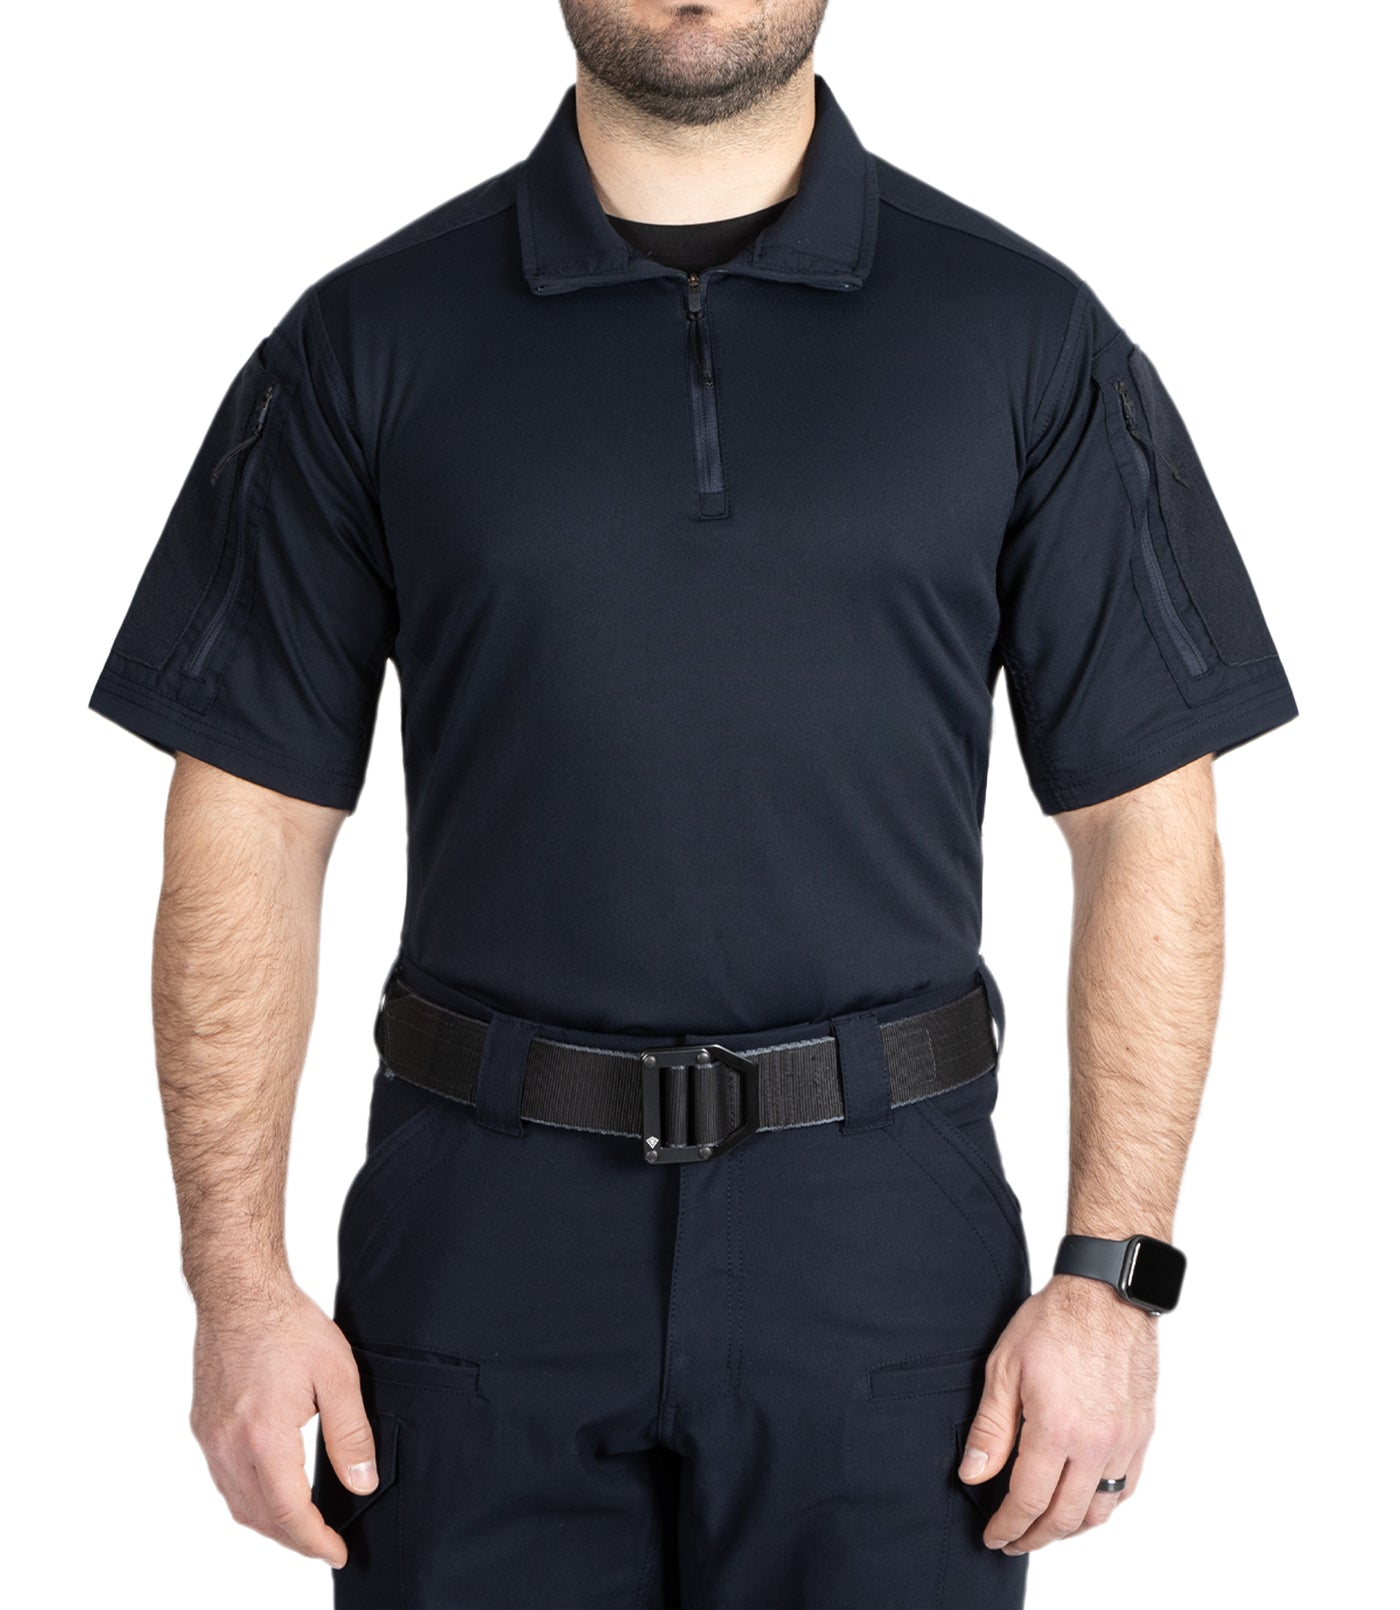 Men's V2 Responder Short Sleeve Shirt